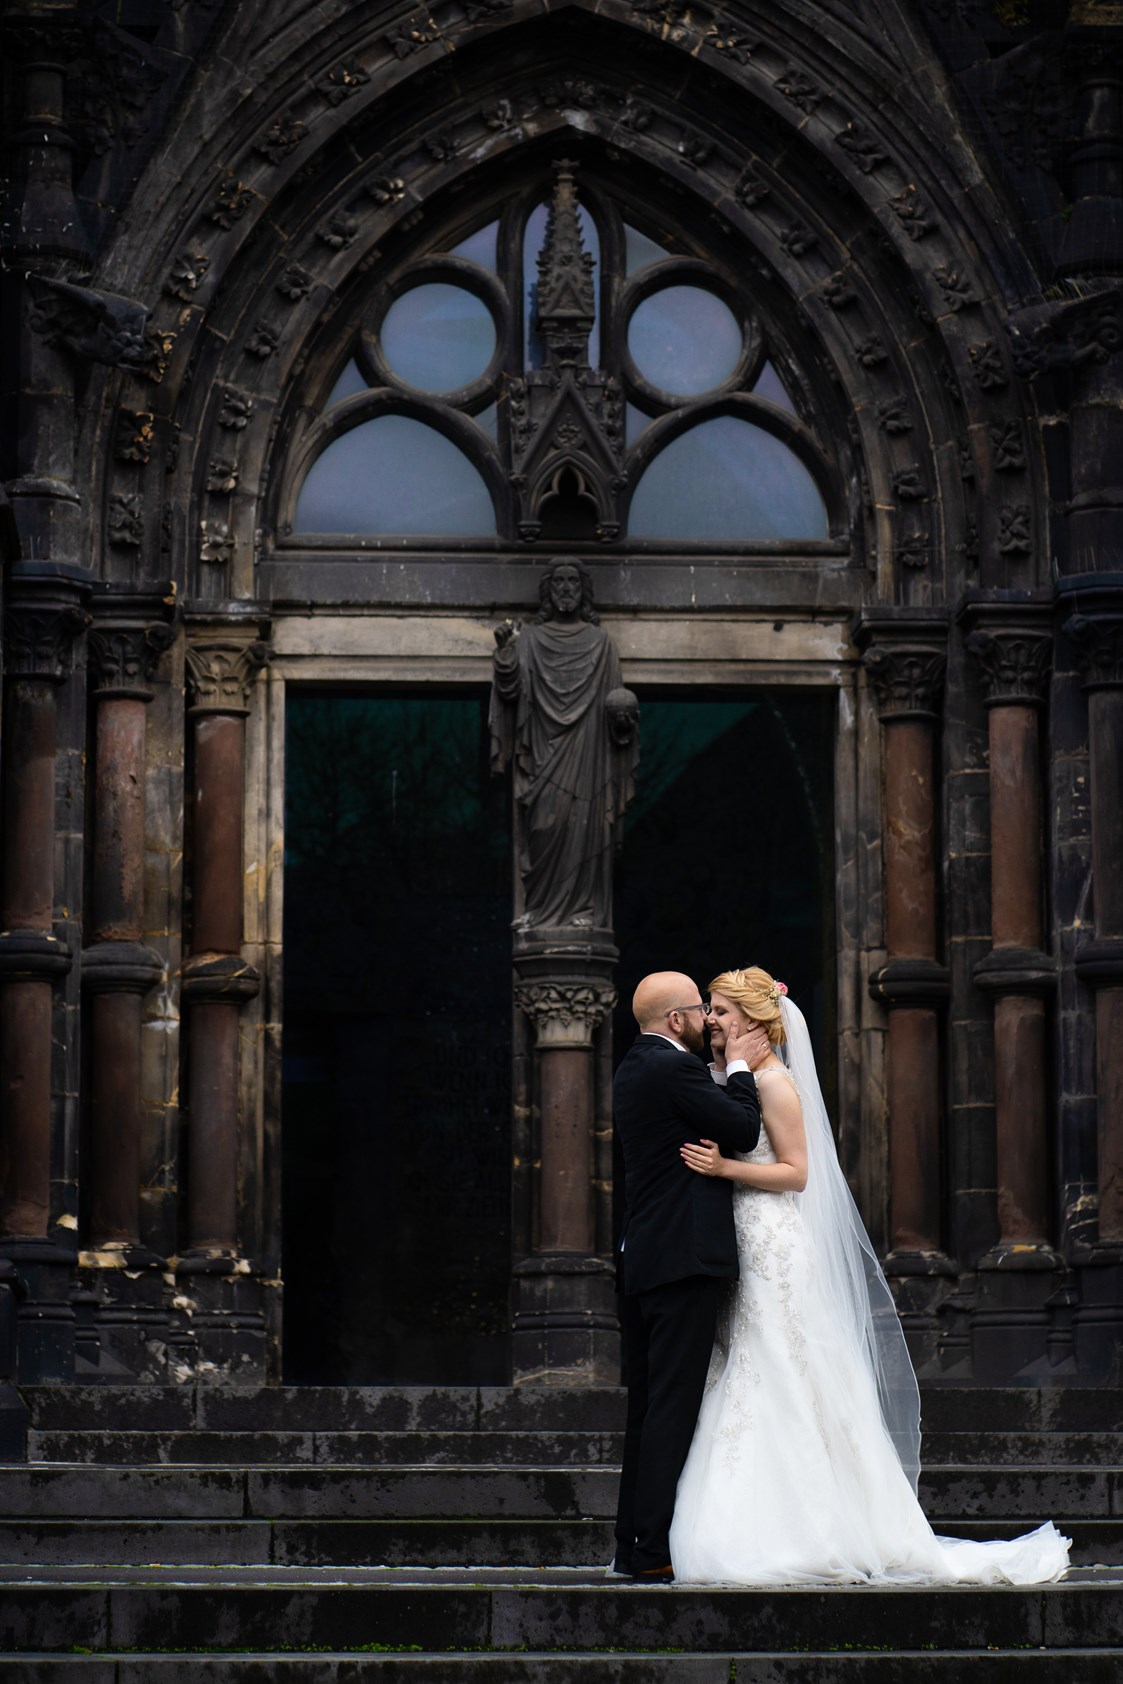 Hochzeitsfotograf: Kirchliche Trauung | Hochzeitsfotografie - Viktor Theobaldt